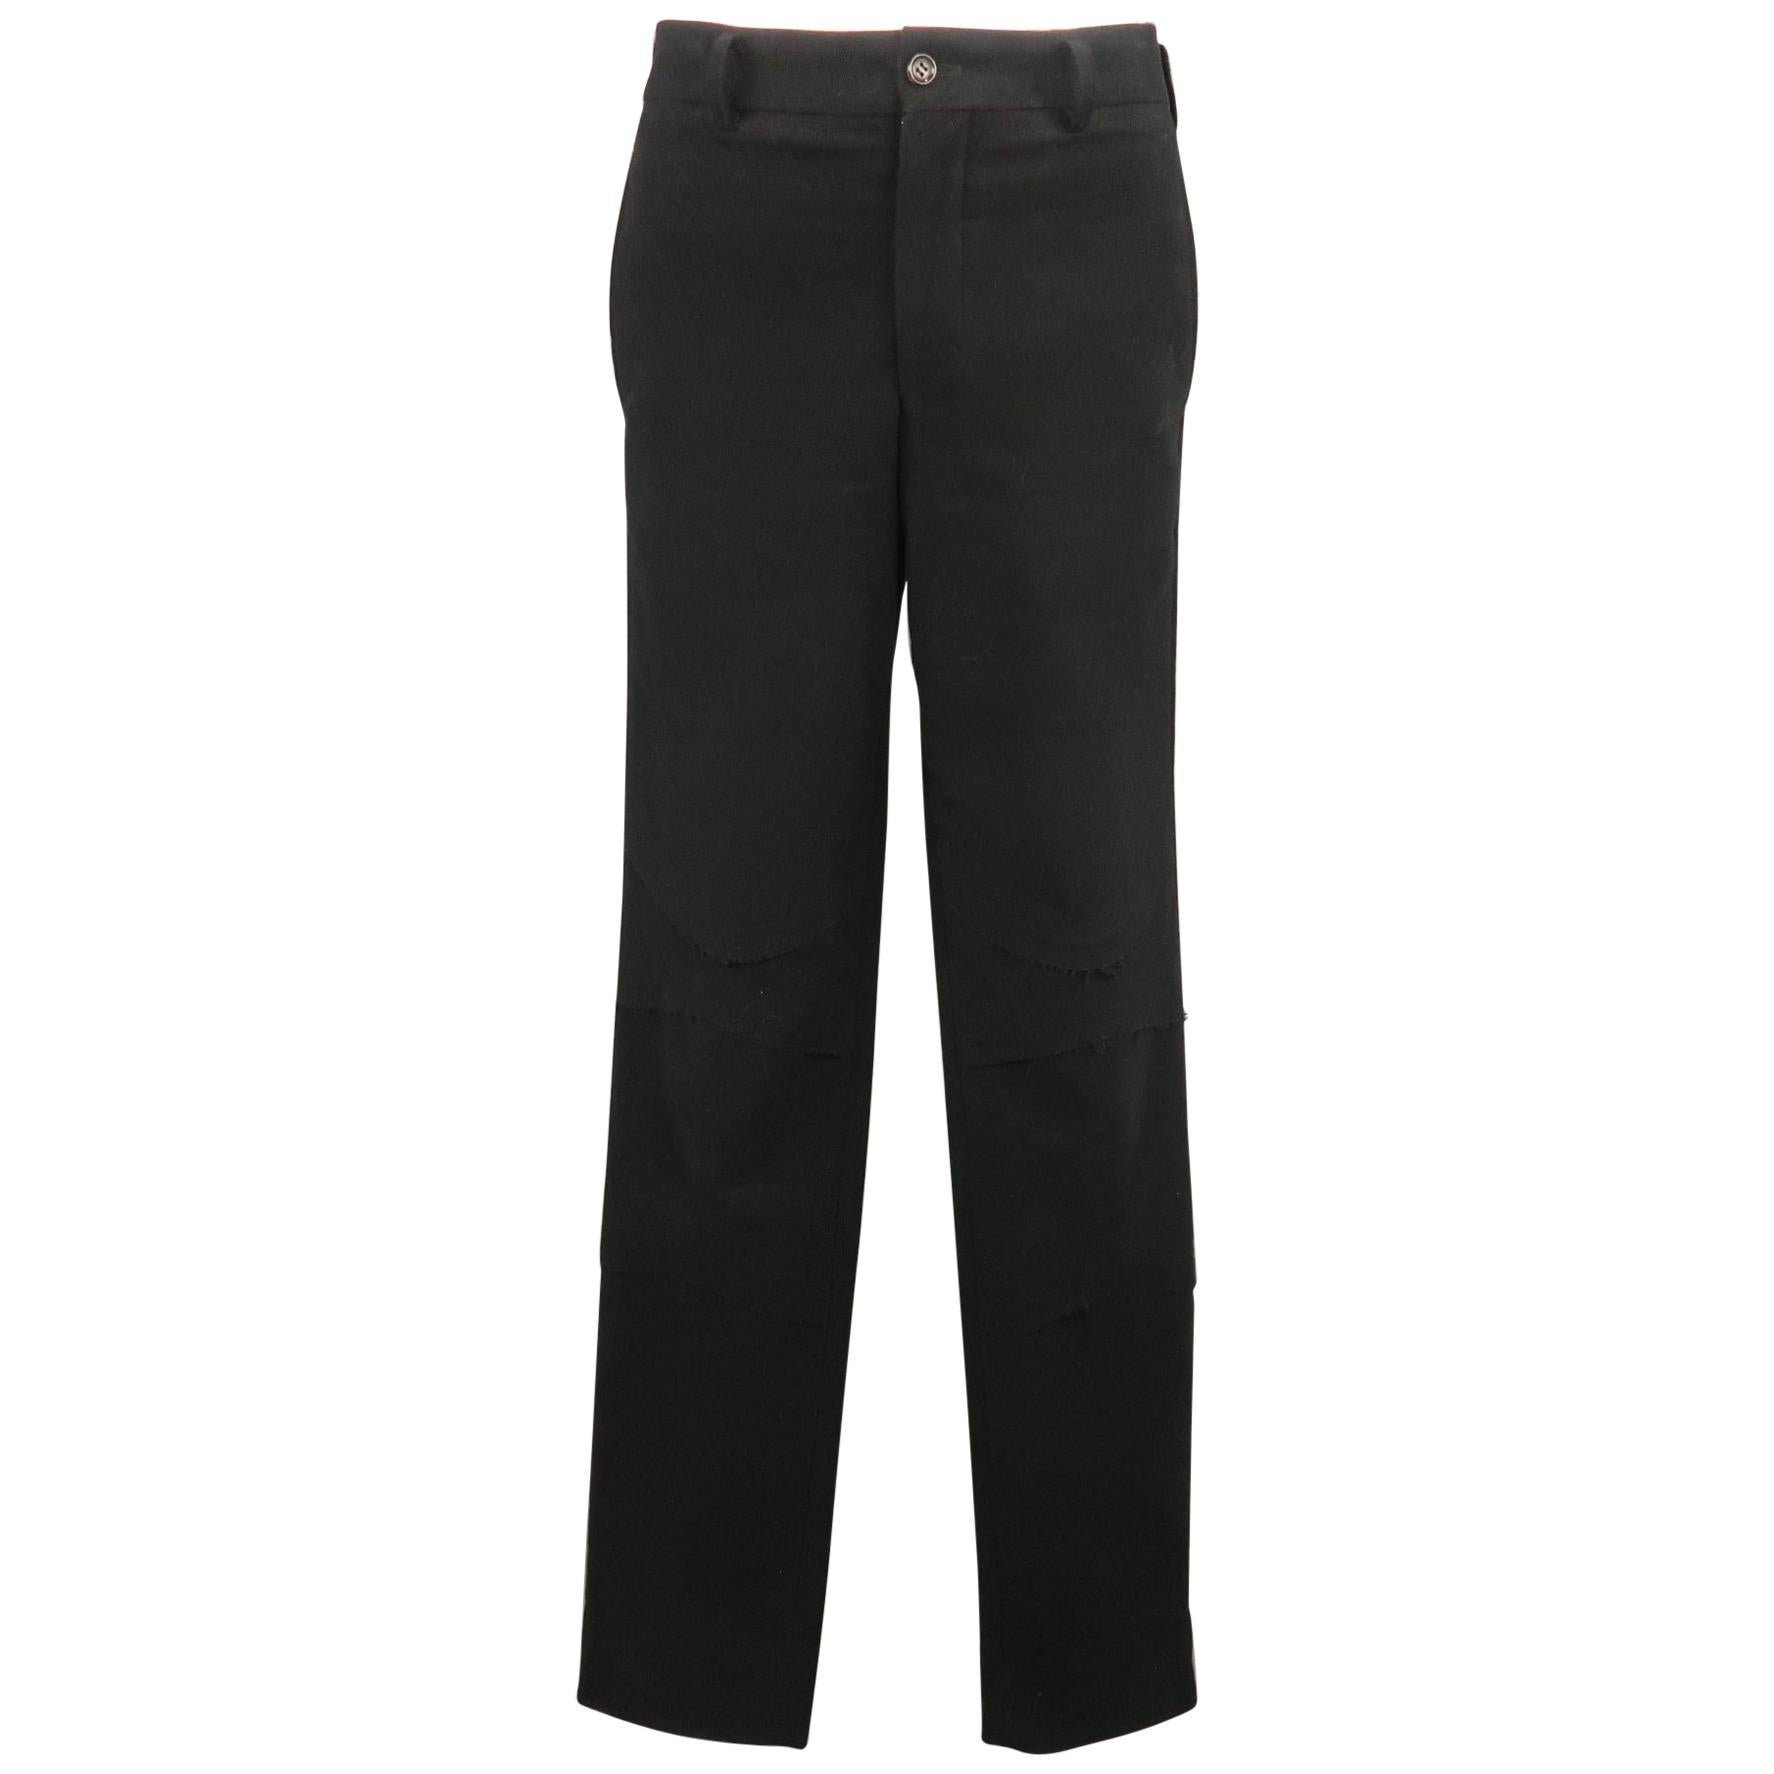 COMME des GARCONS HOMME PLUS Size L Black Cotton Blend 35 Zip Fly Casual Pants